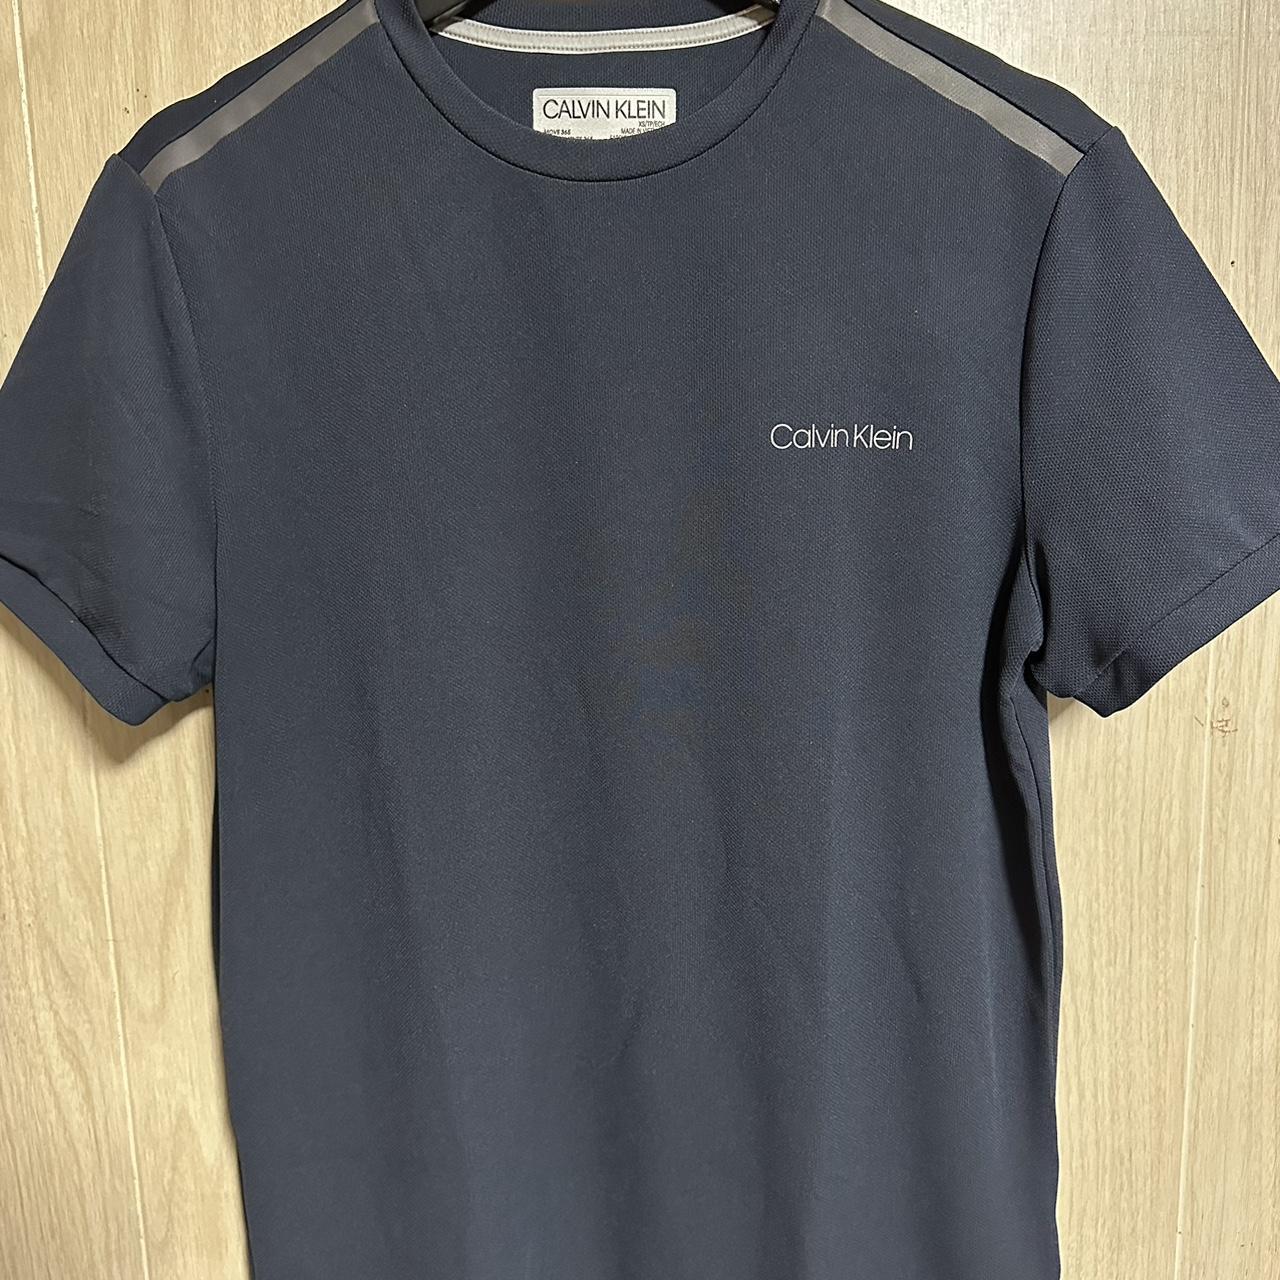 Calvin Klein sports T shirt Very lightweight and... - Depop